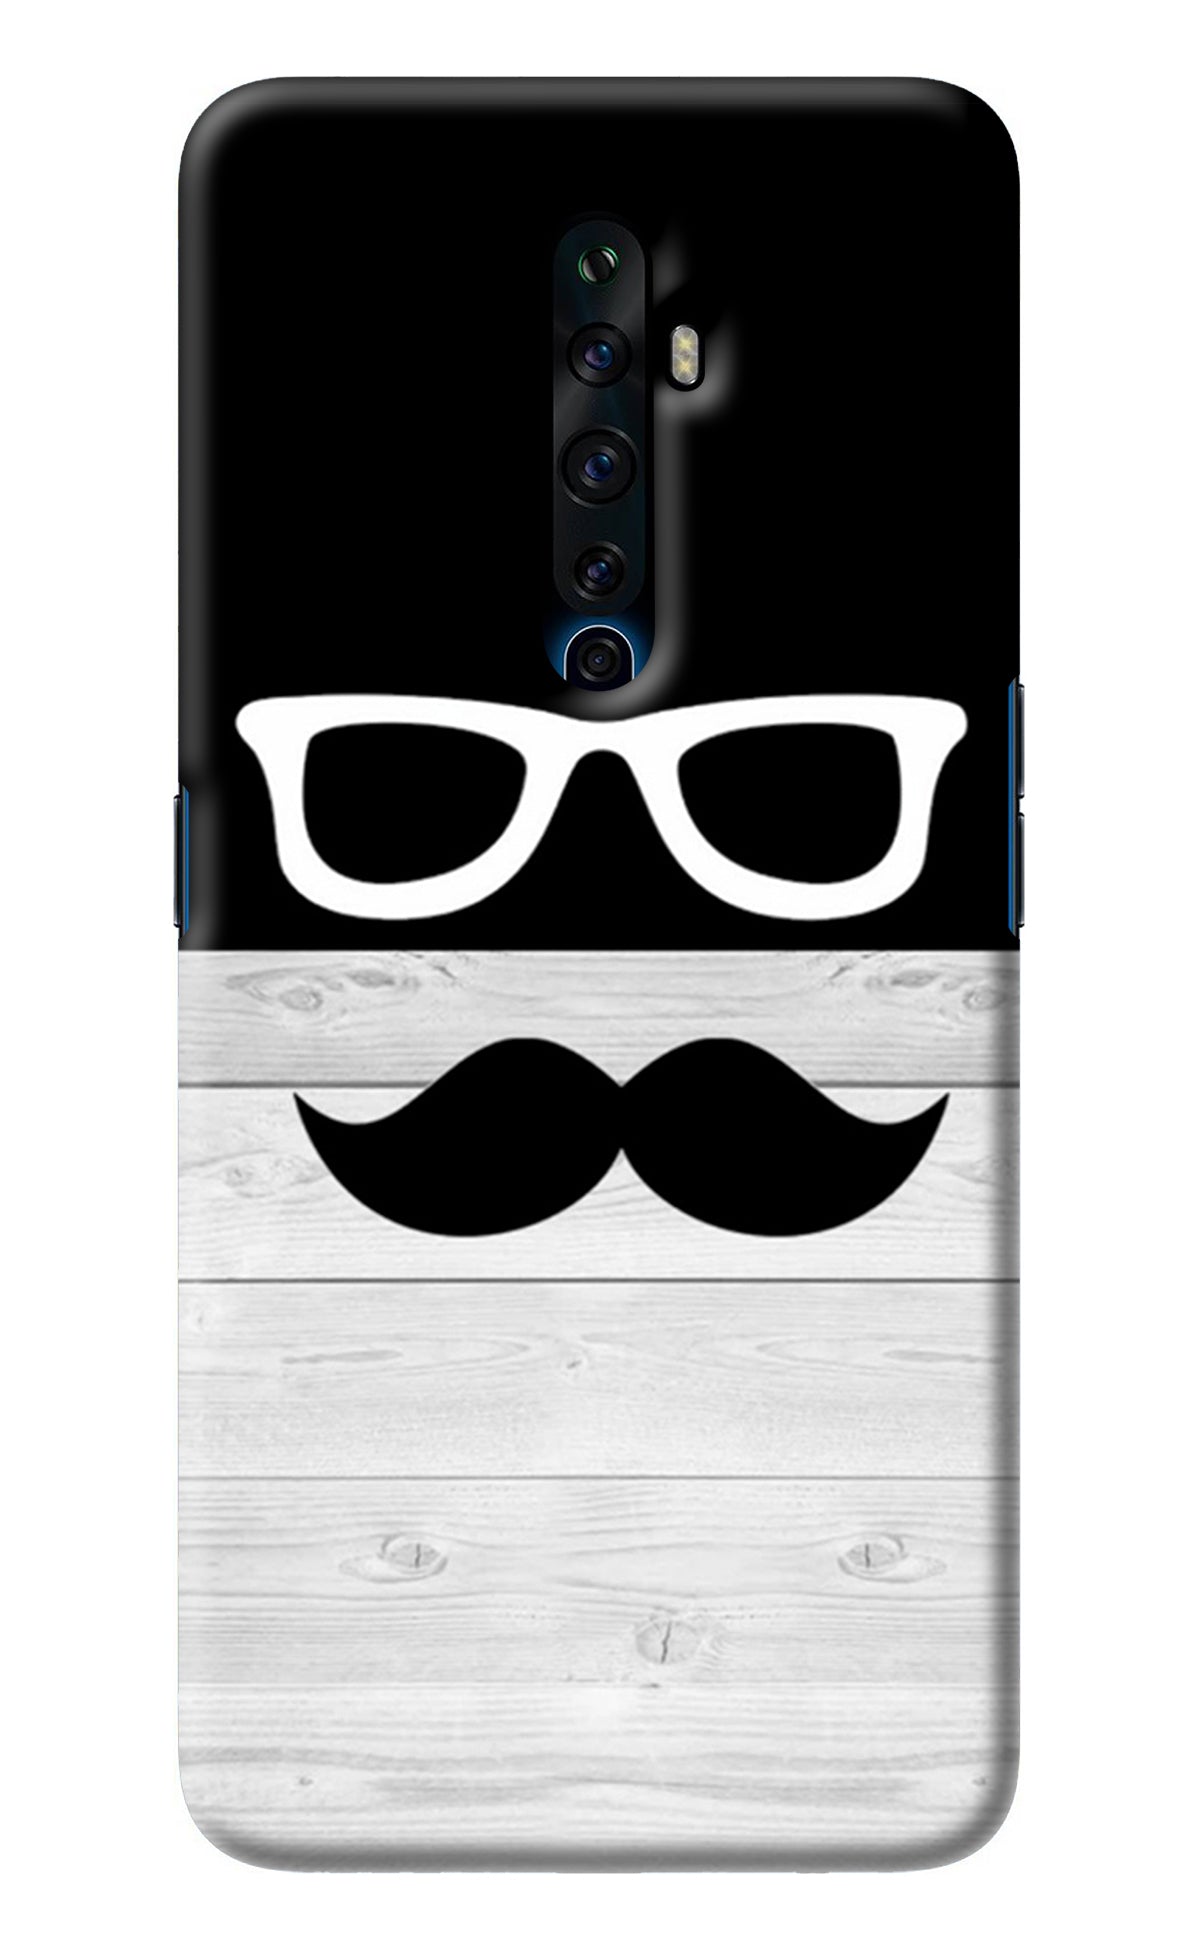 Mustache Oppo Reno2 Z Back Cover